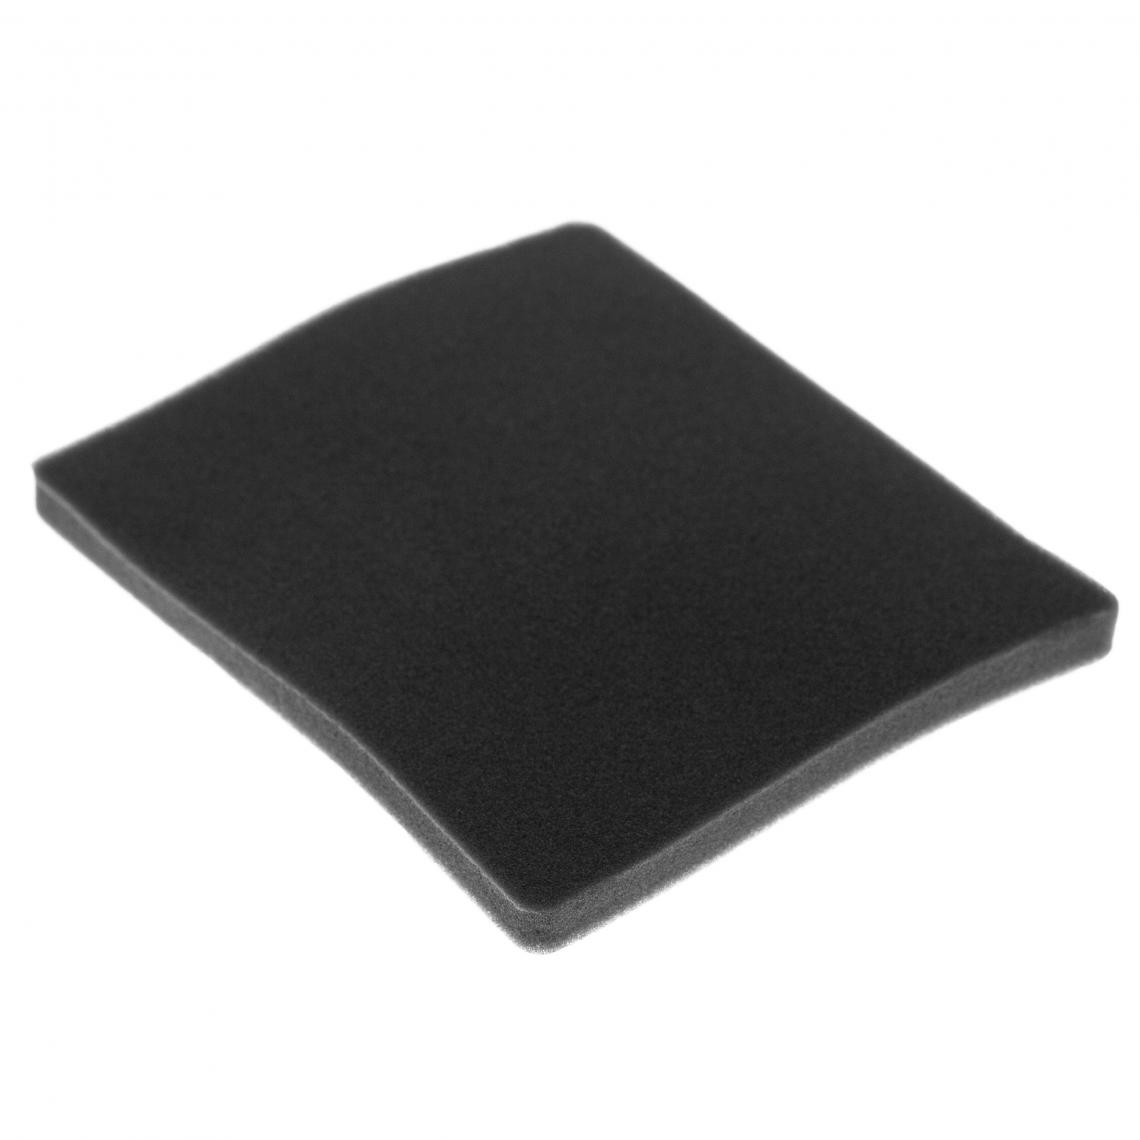 Vhbw - vhbw Filtre compatible avec Electrolux ACX6317 (910288794) aspirateur - filtre de sortie d'air (filtre éponge), noir - Accessoire entretien des sols